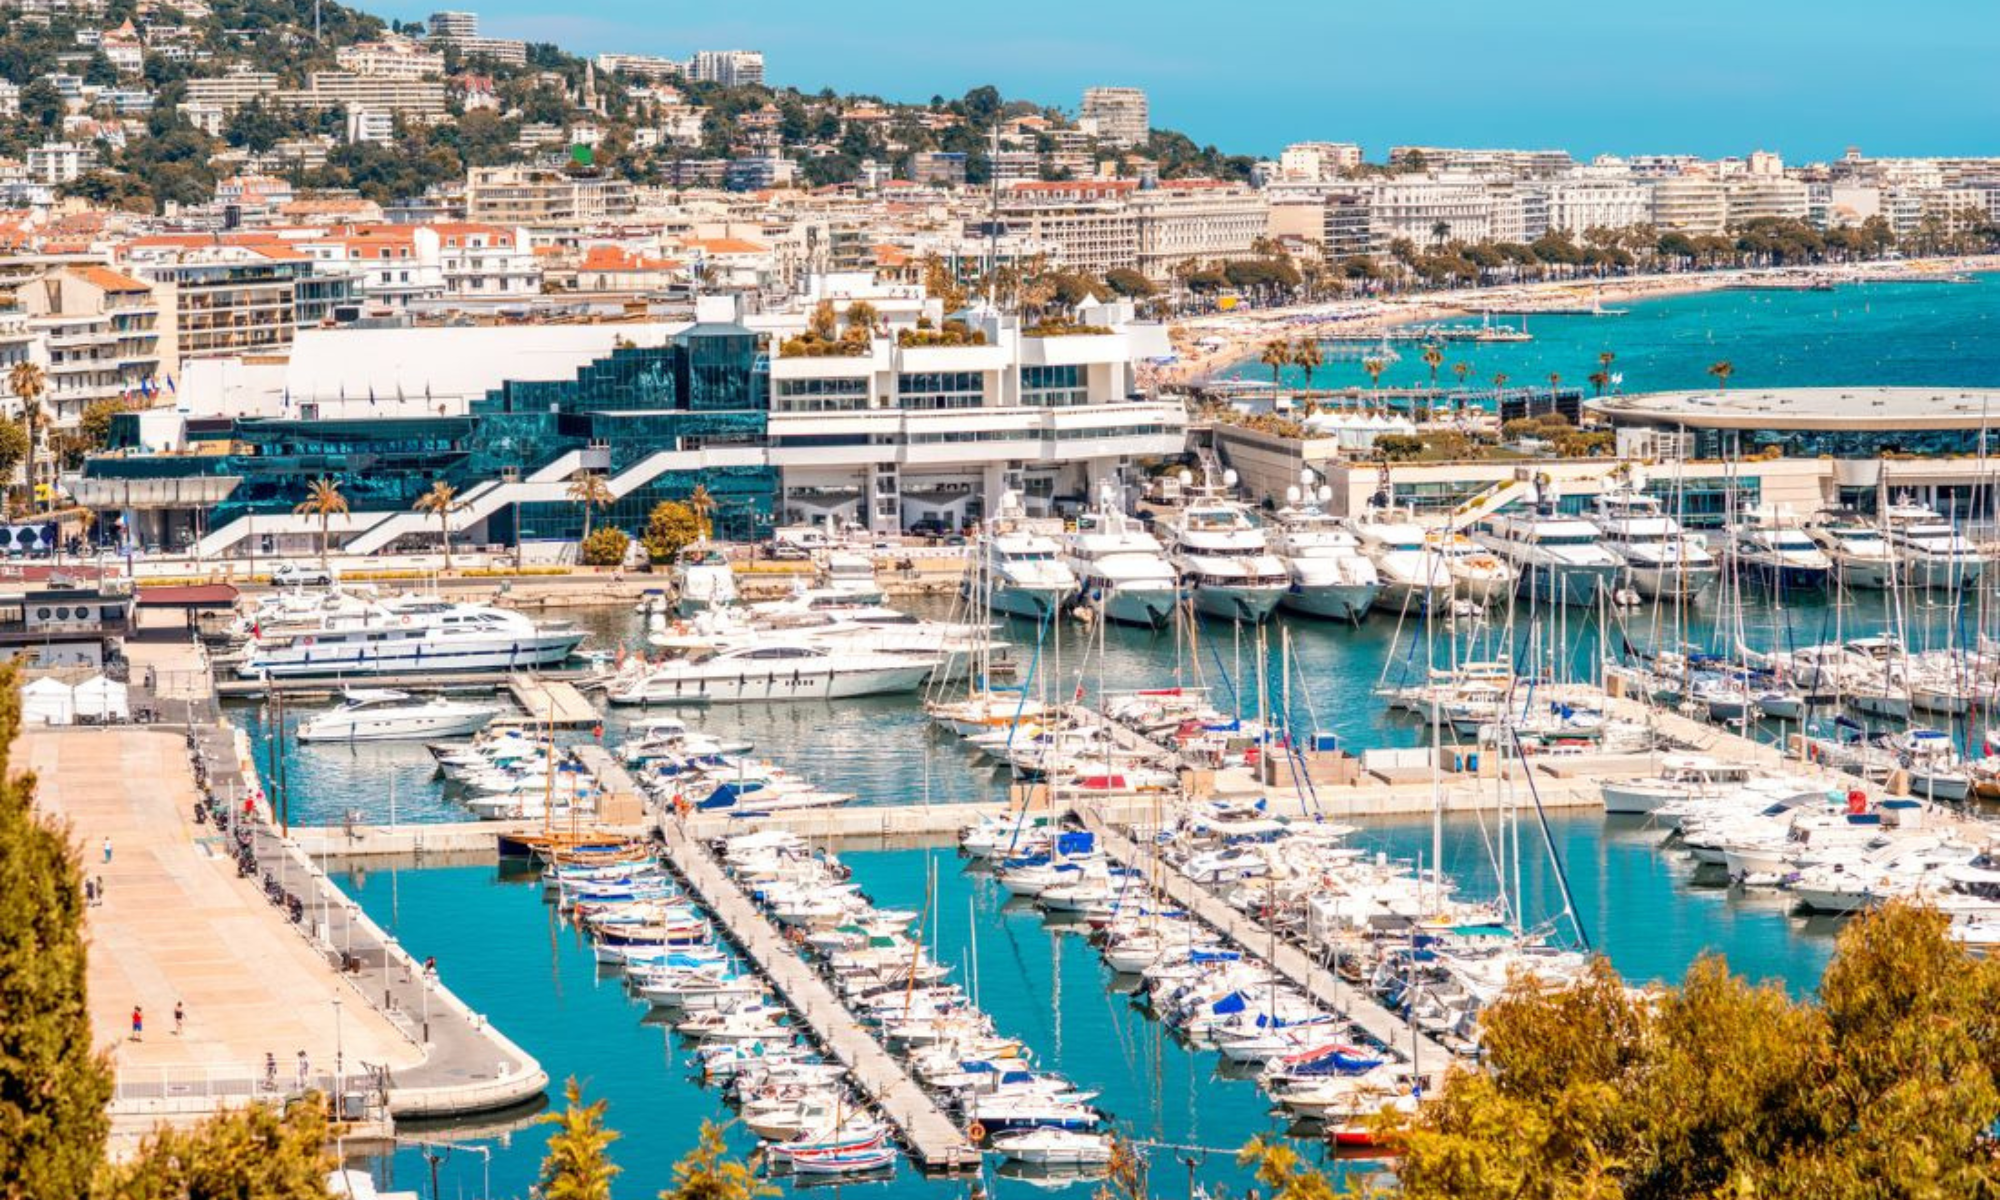 Port de Cannes